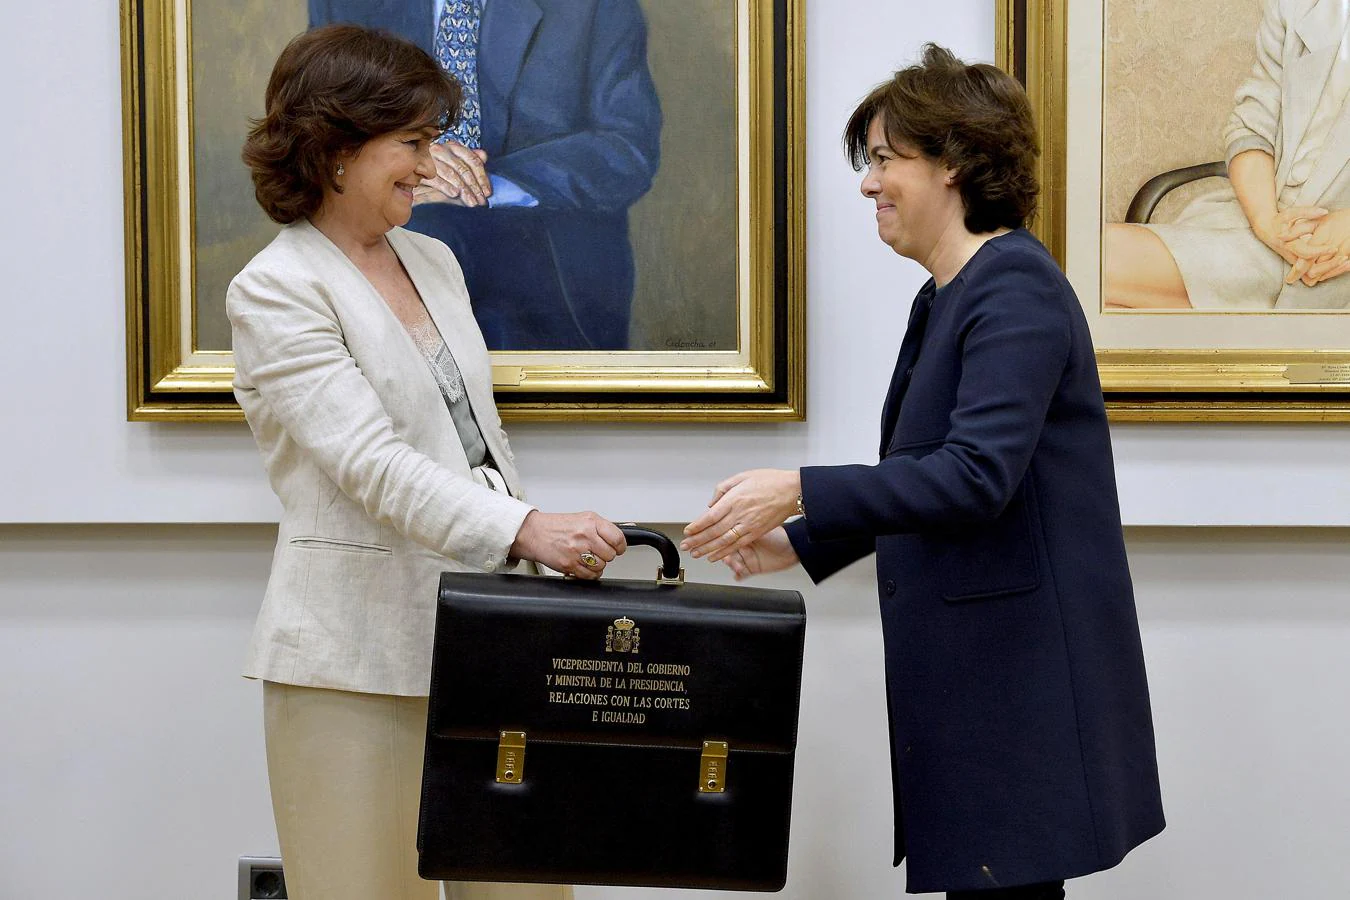 La vicepresidenta del gobierno y ministra de Presidencia e Igualdad Carmen Calvo, recibe la cartera de la exvicepresidenta Soraya Sáez de Santamaría (derecha), en el Palacio de la Moncloa en Madrid. 